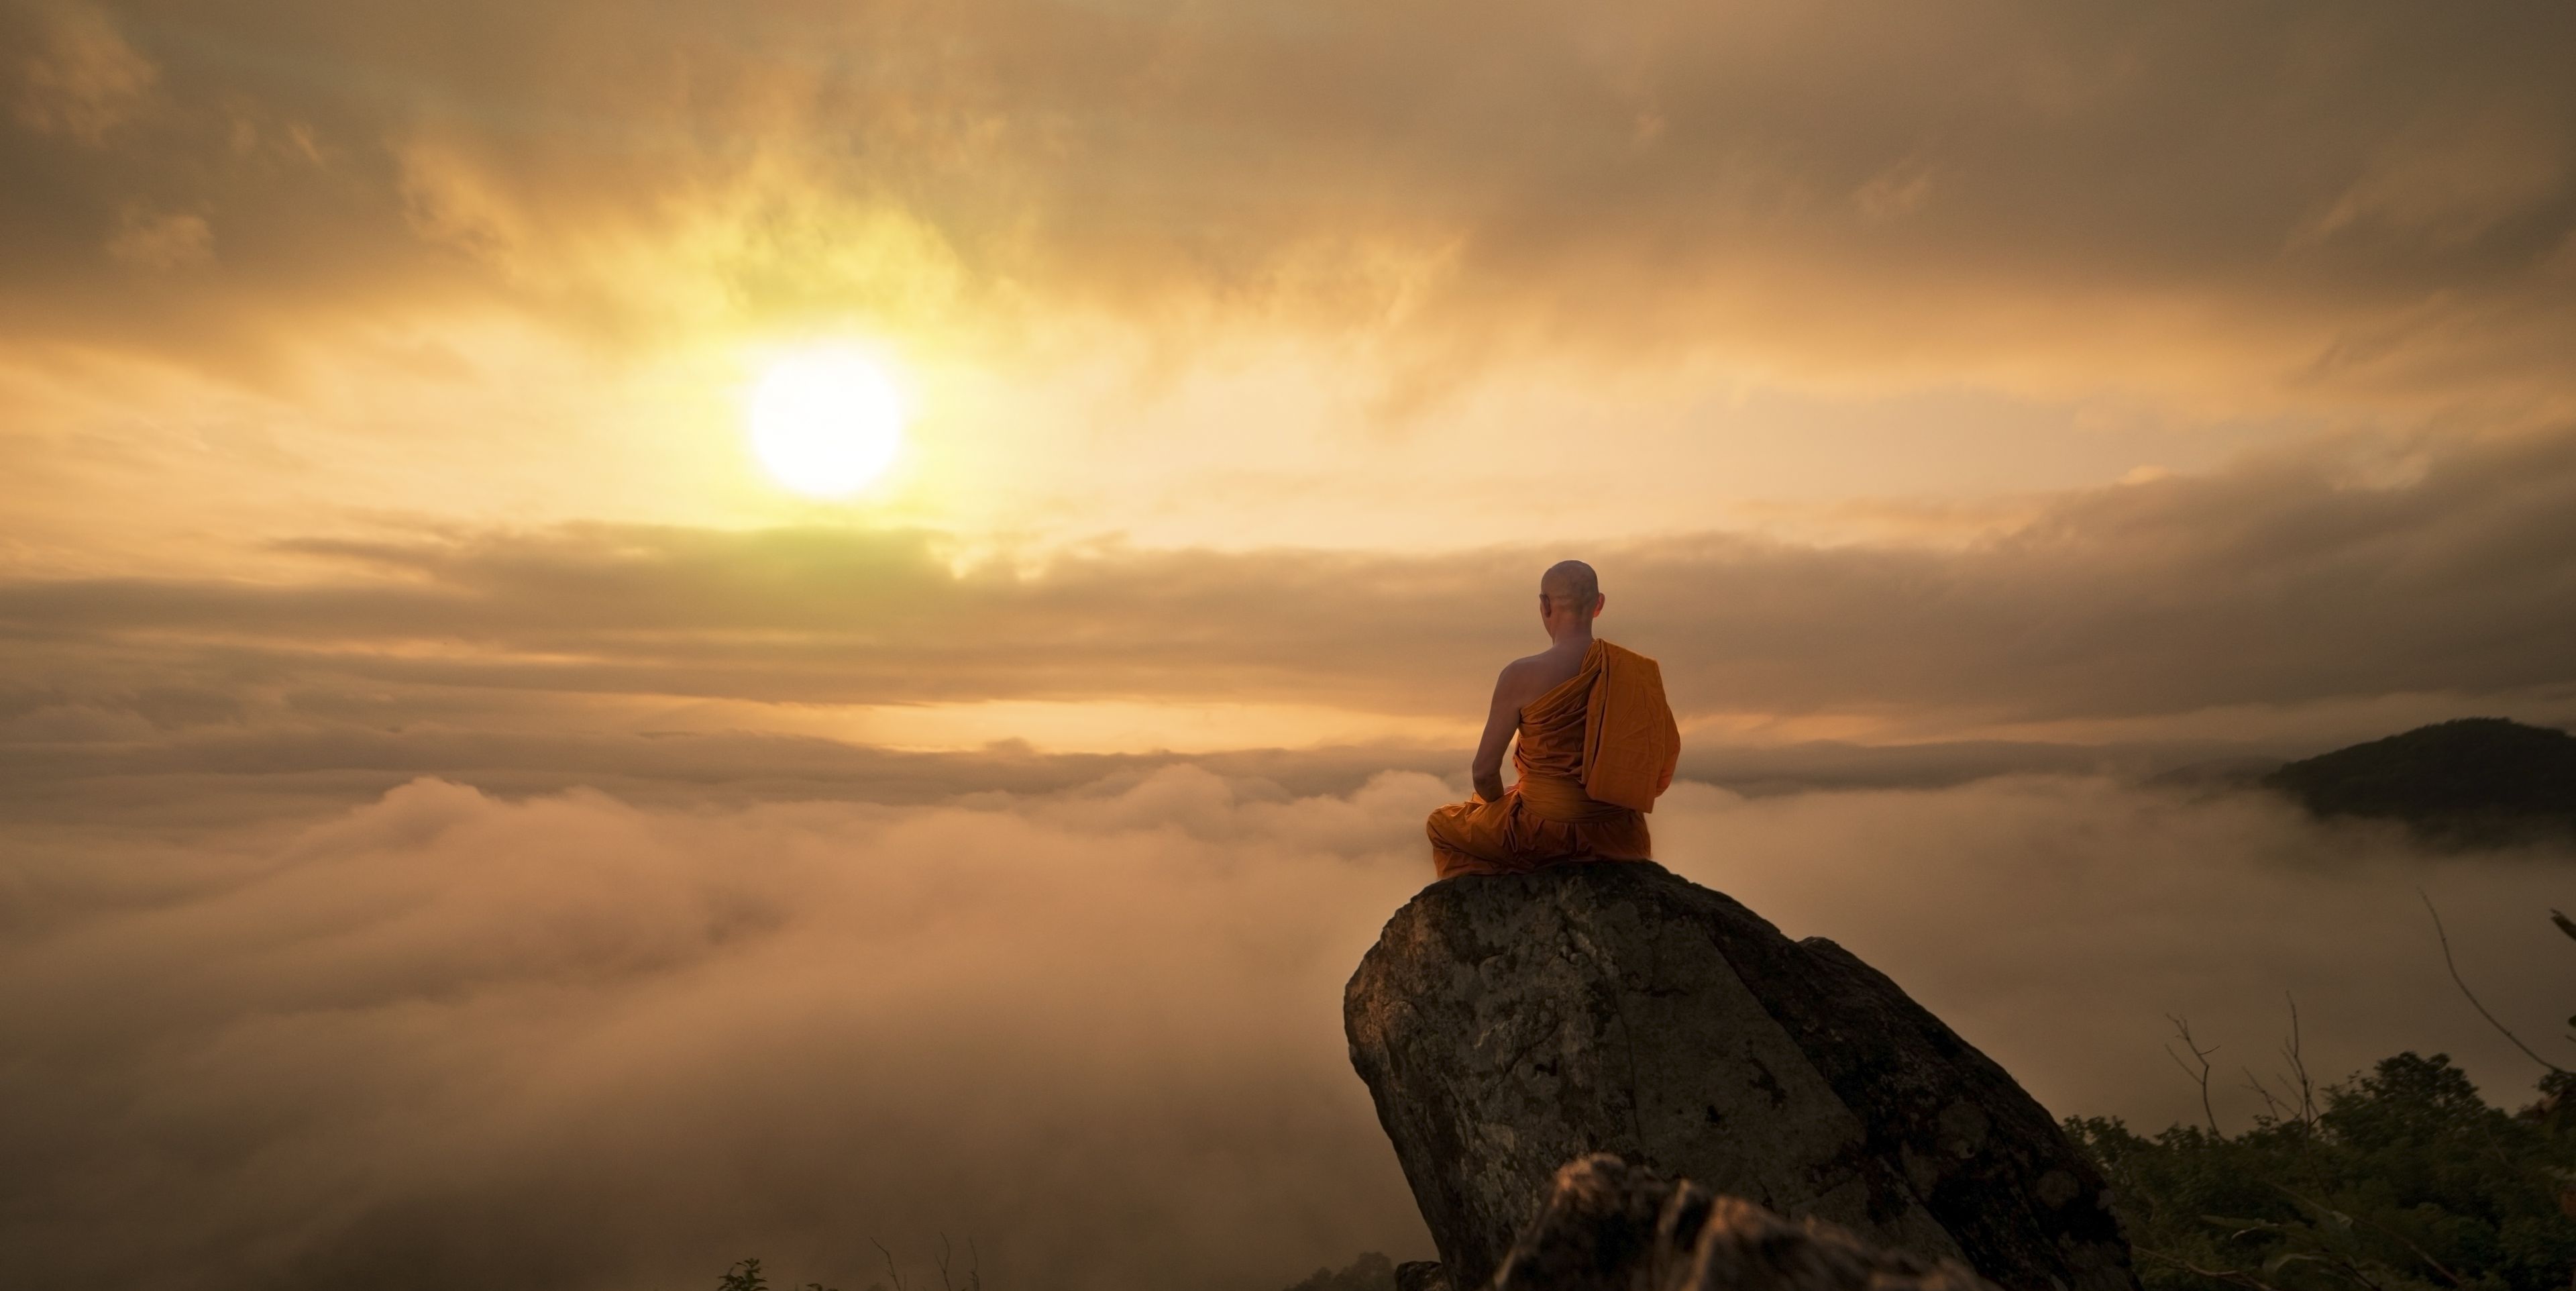 Mann auf einem Felsen sitzend mit beeindruckendem Ausblick auf eine Wolkendecke bei Sonnenaufgang